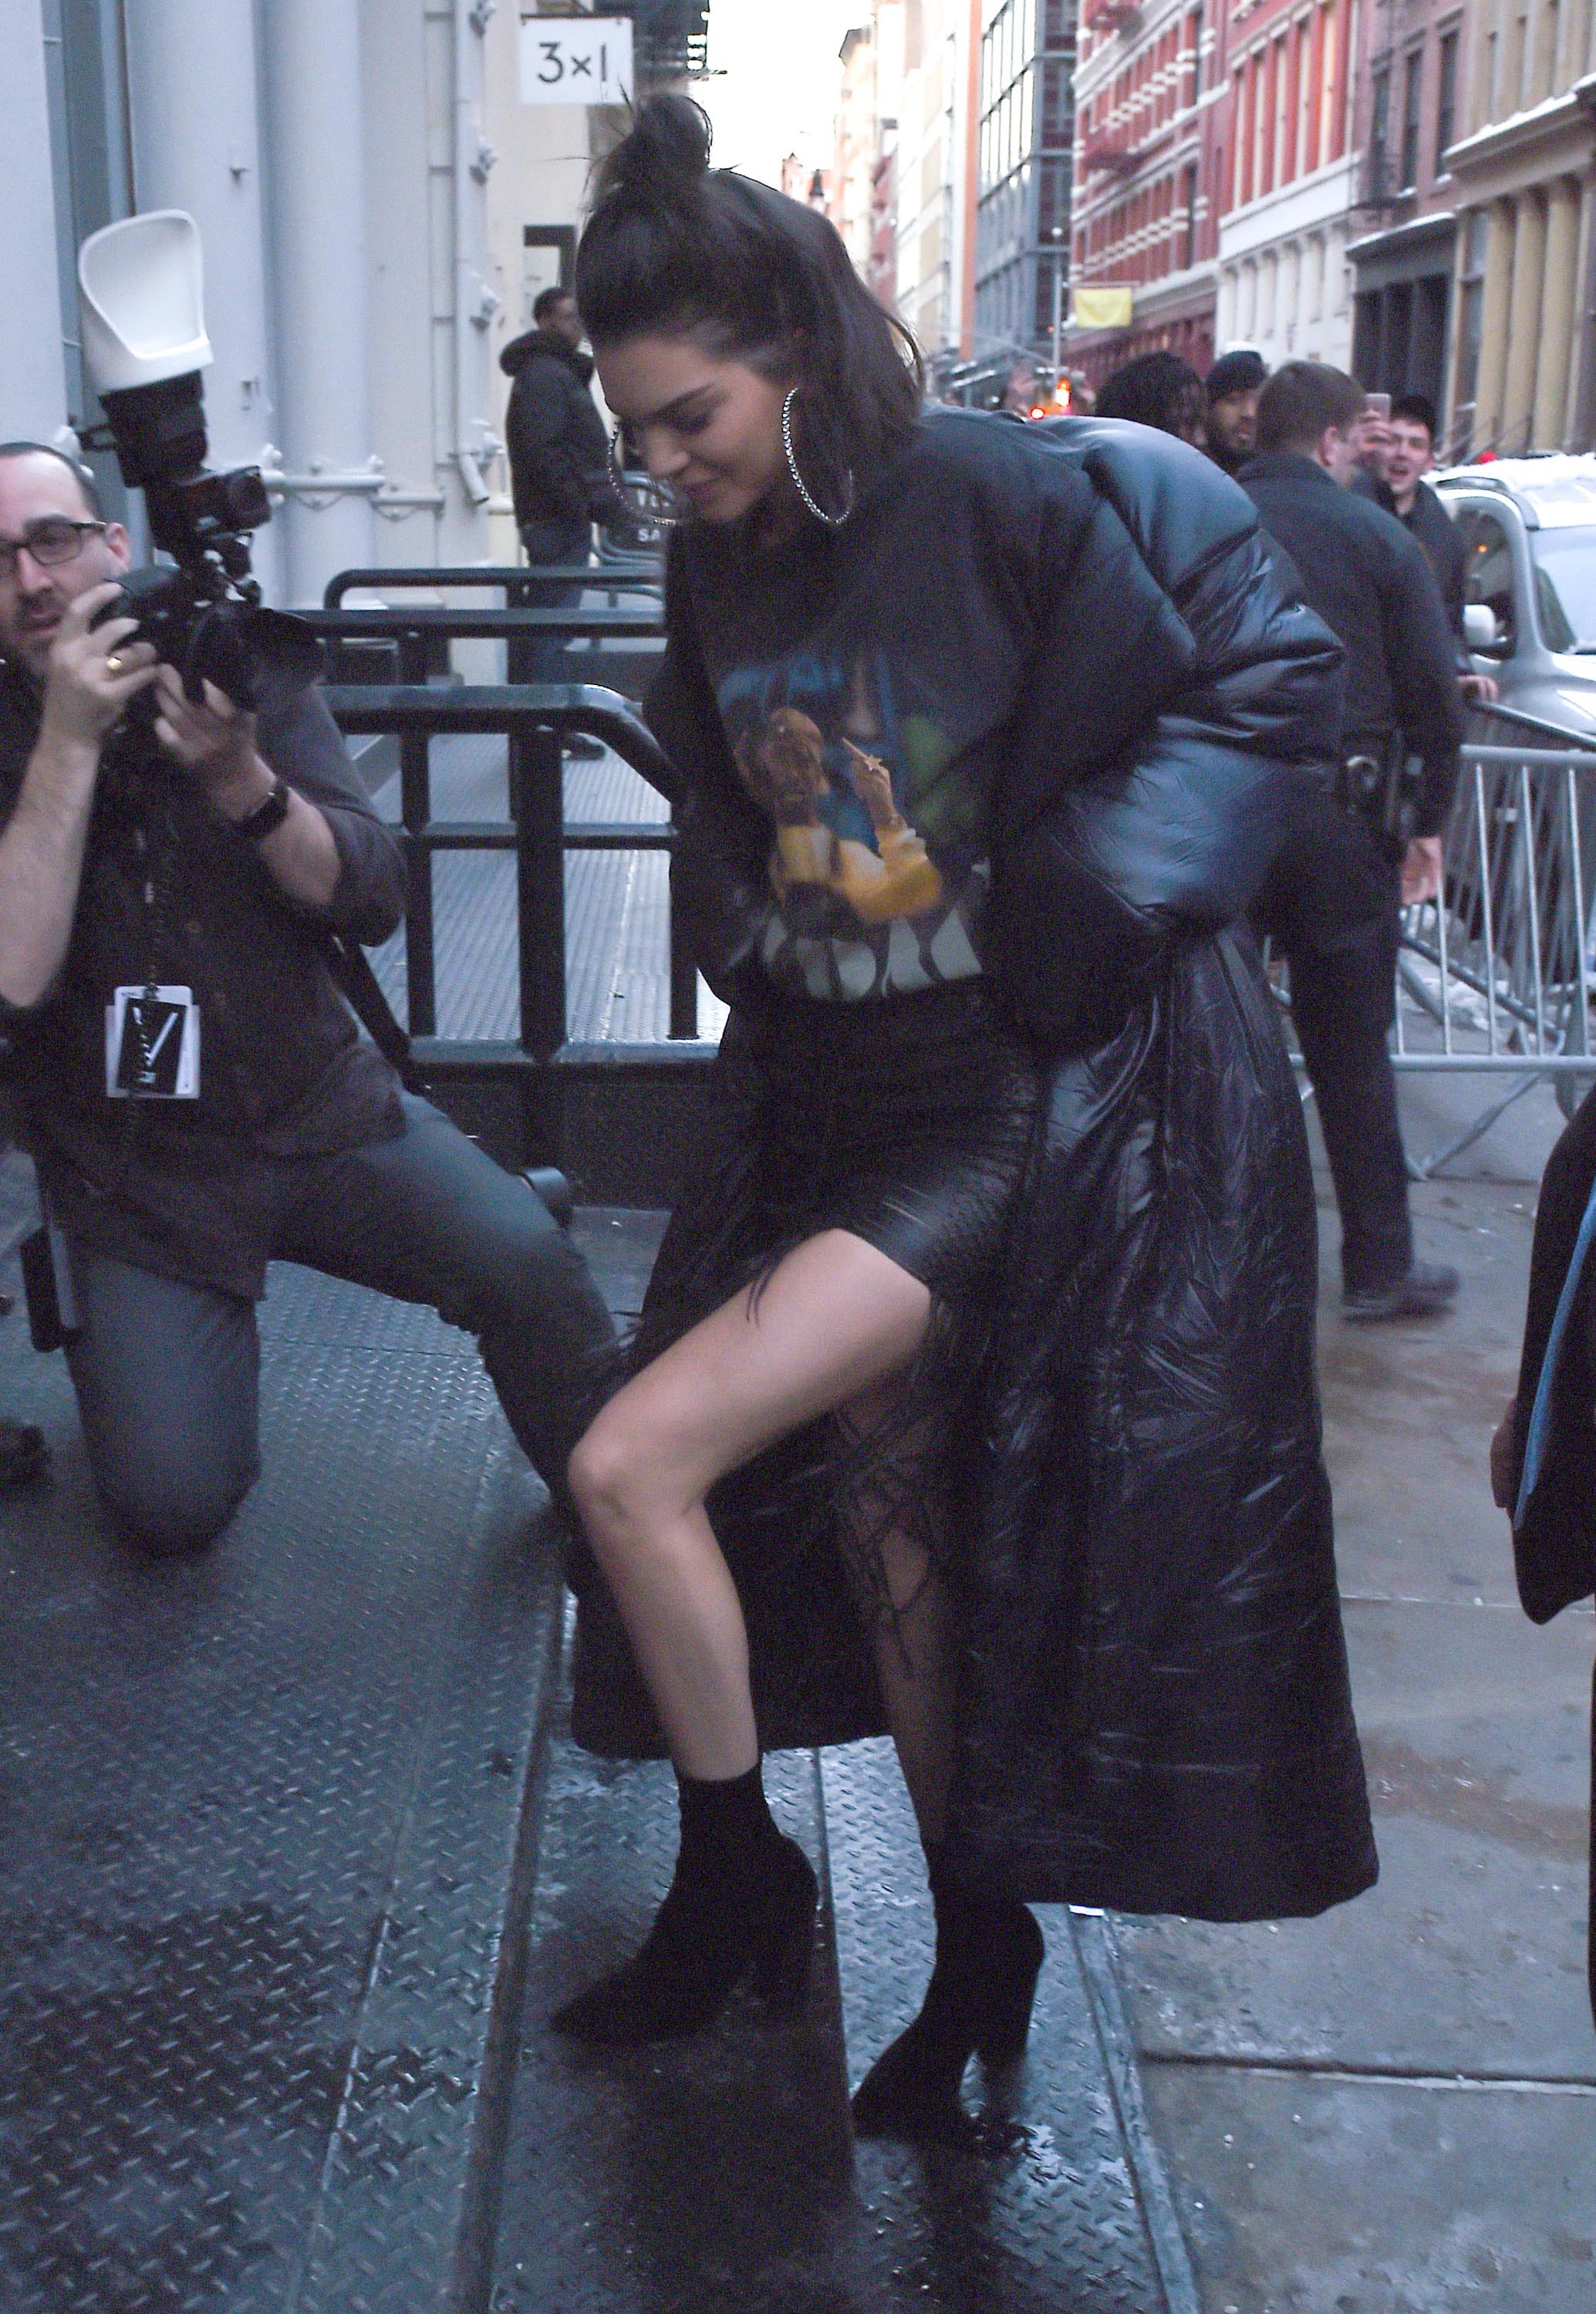 Kendall Jenner arriving at the V Magazine Pop Up Shop